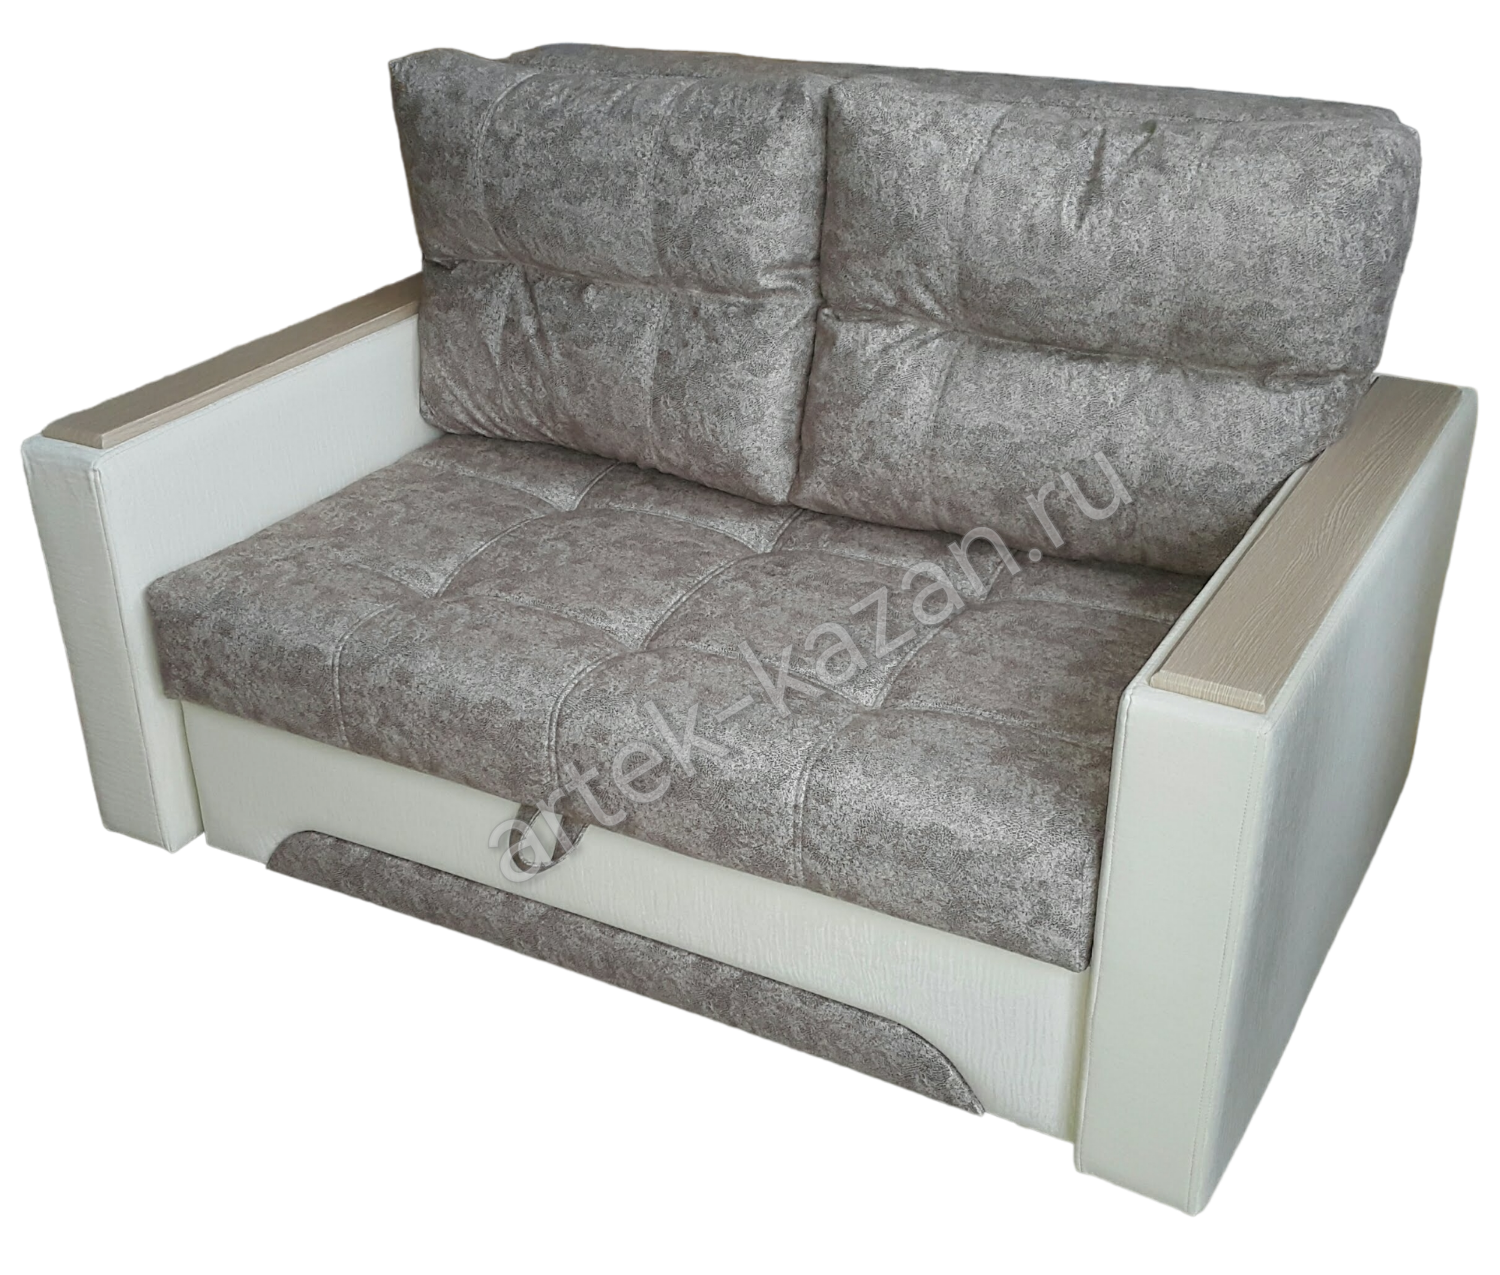 Мини диван на выкатном механизме Миник фото № 34. Купить недорогой диван по низкой цене от производителя можно у нас.